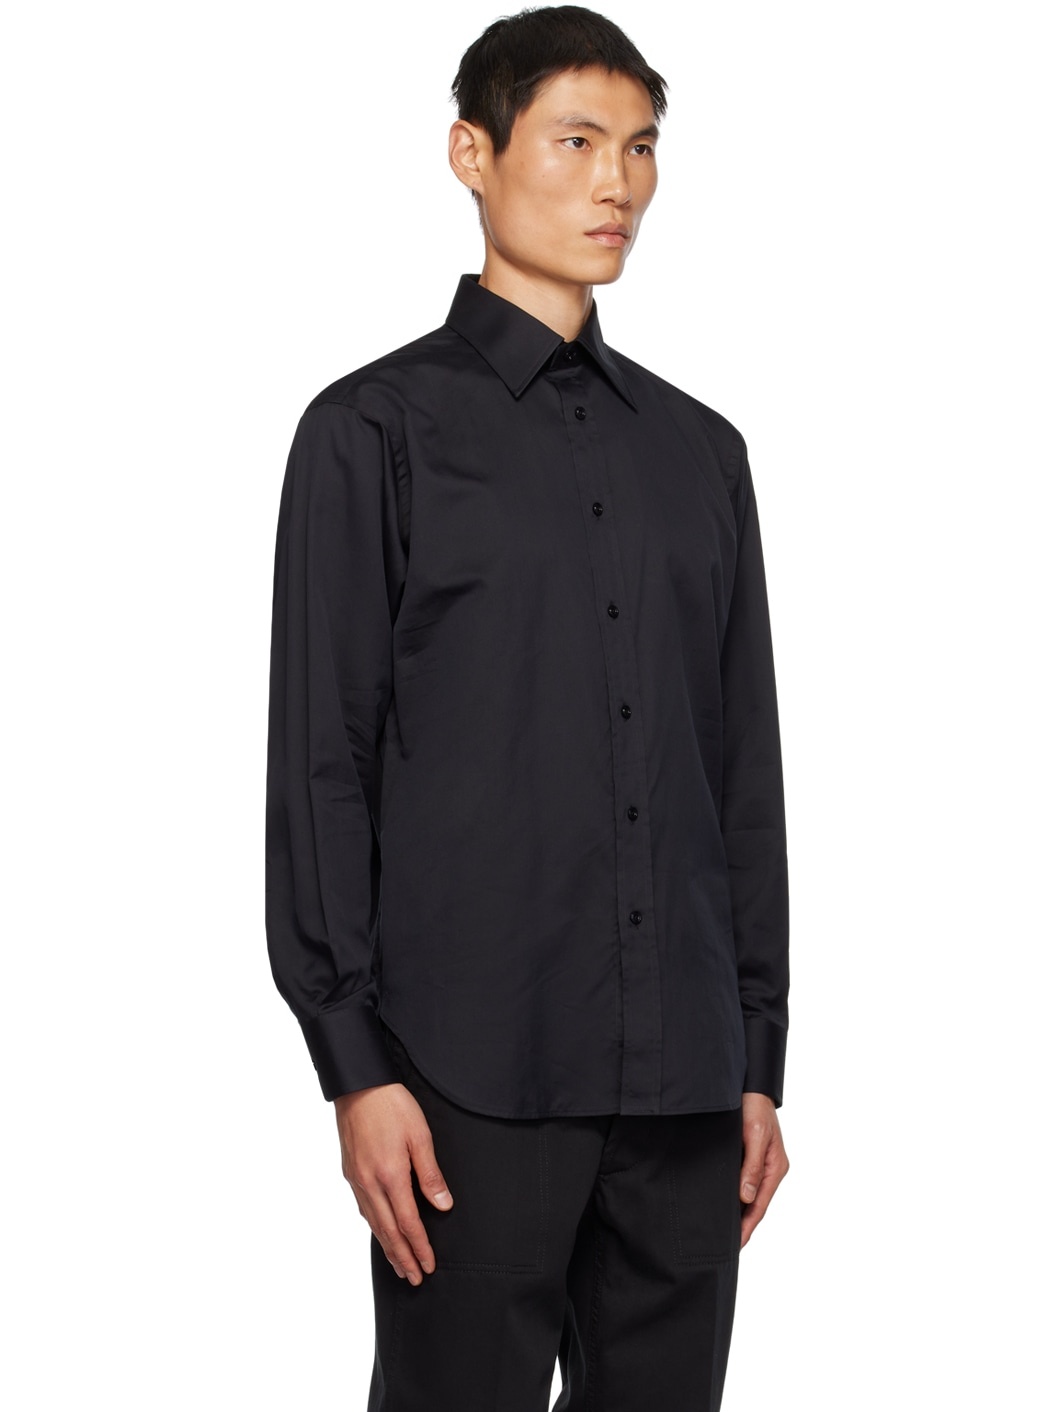 Black Button-Up Shirt - 2